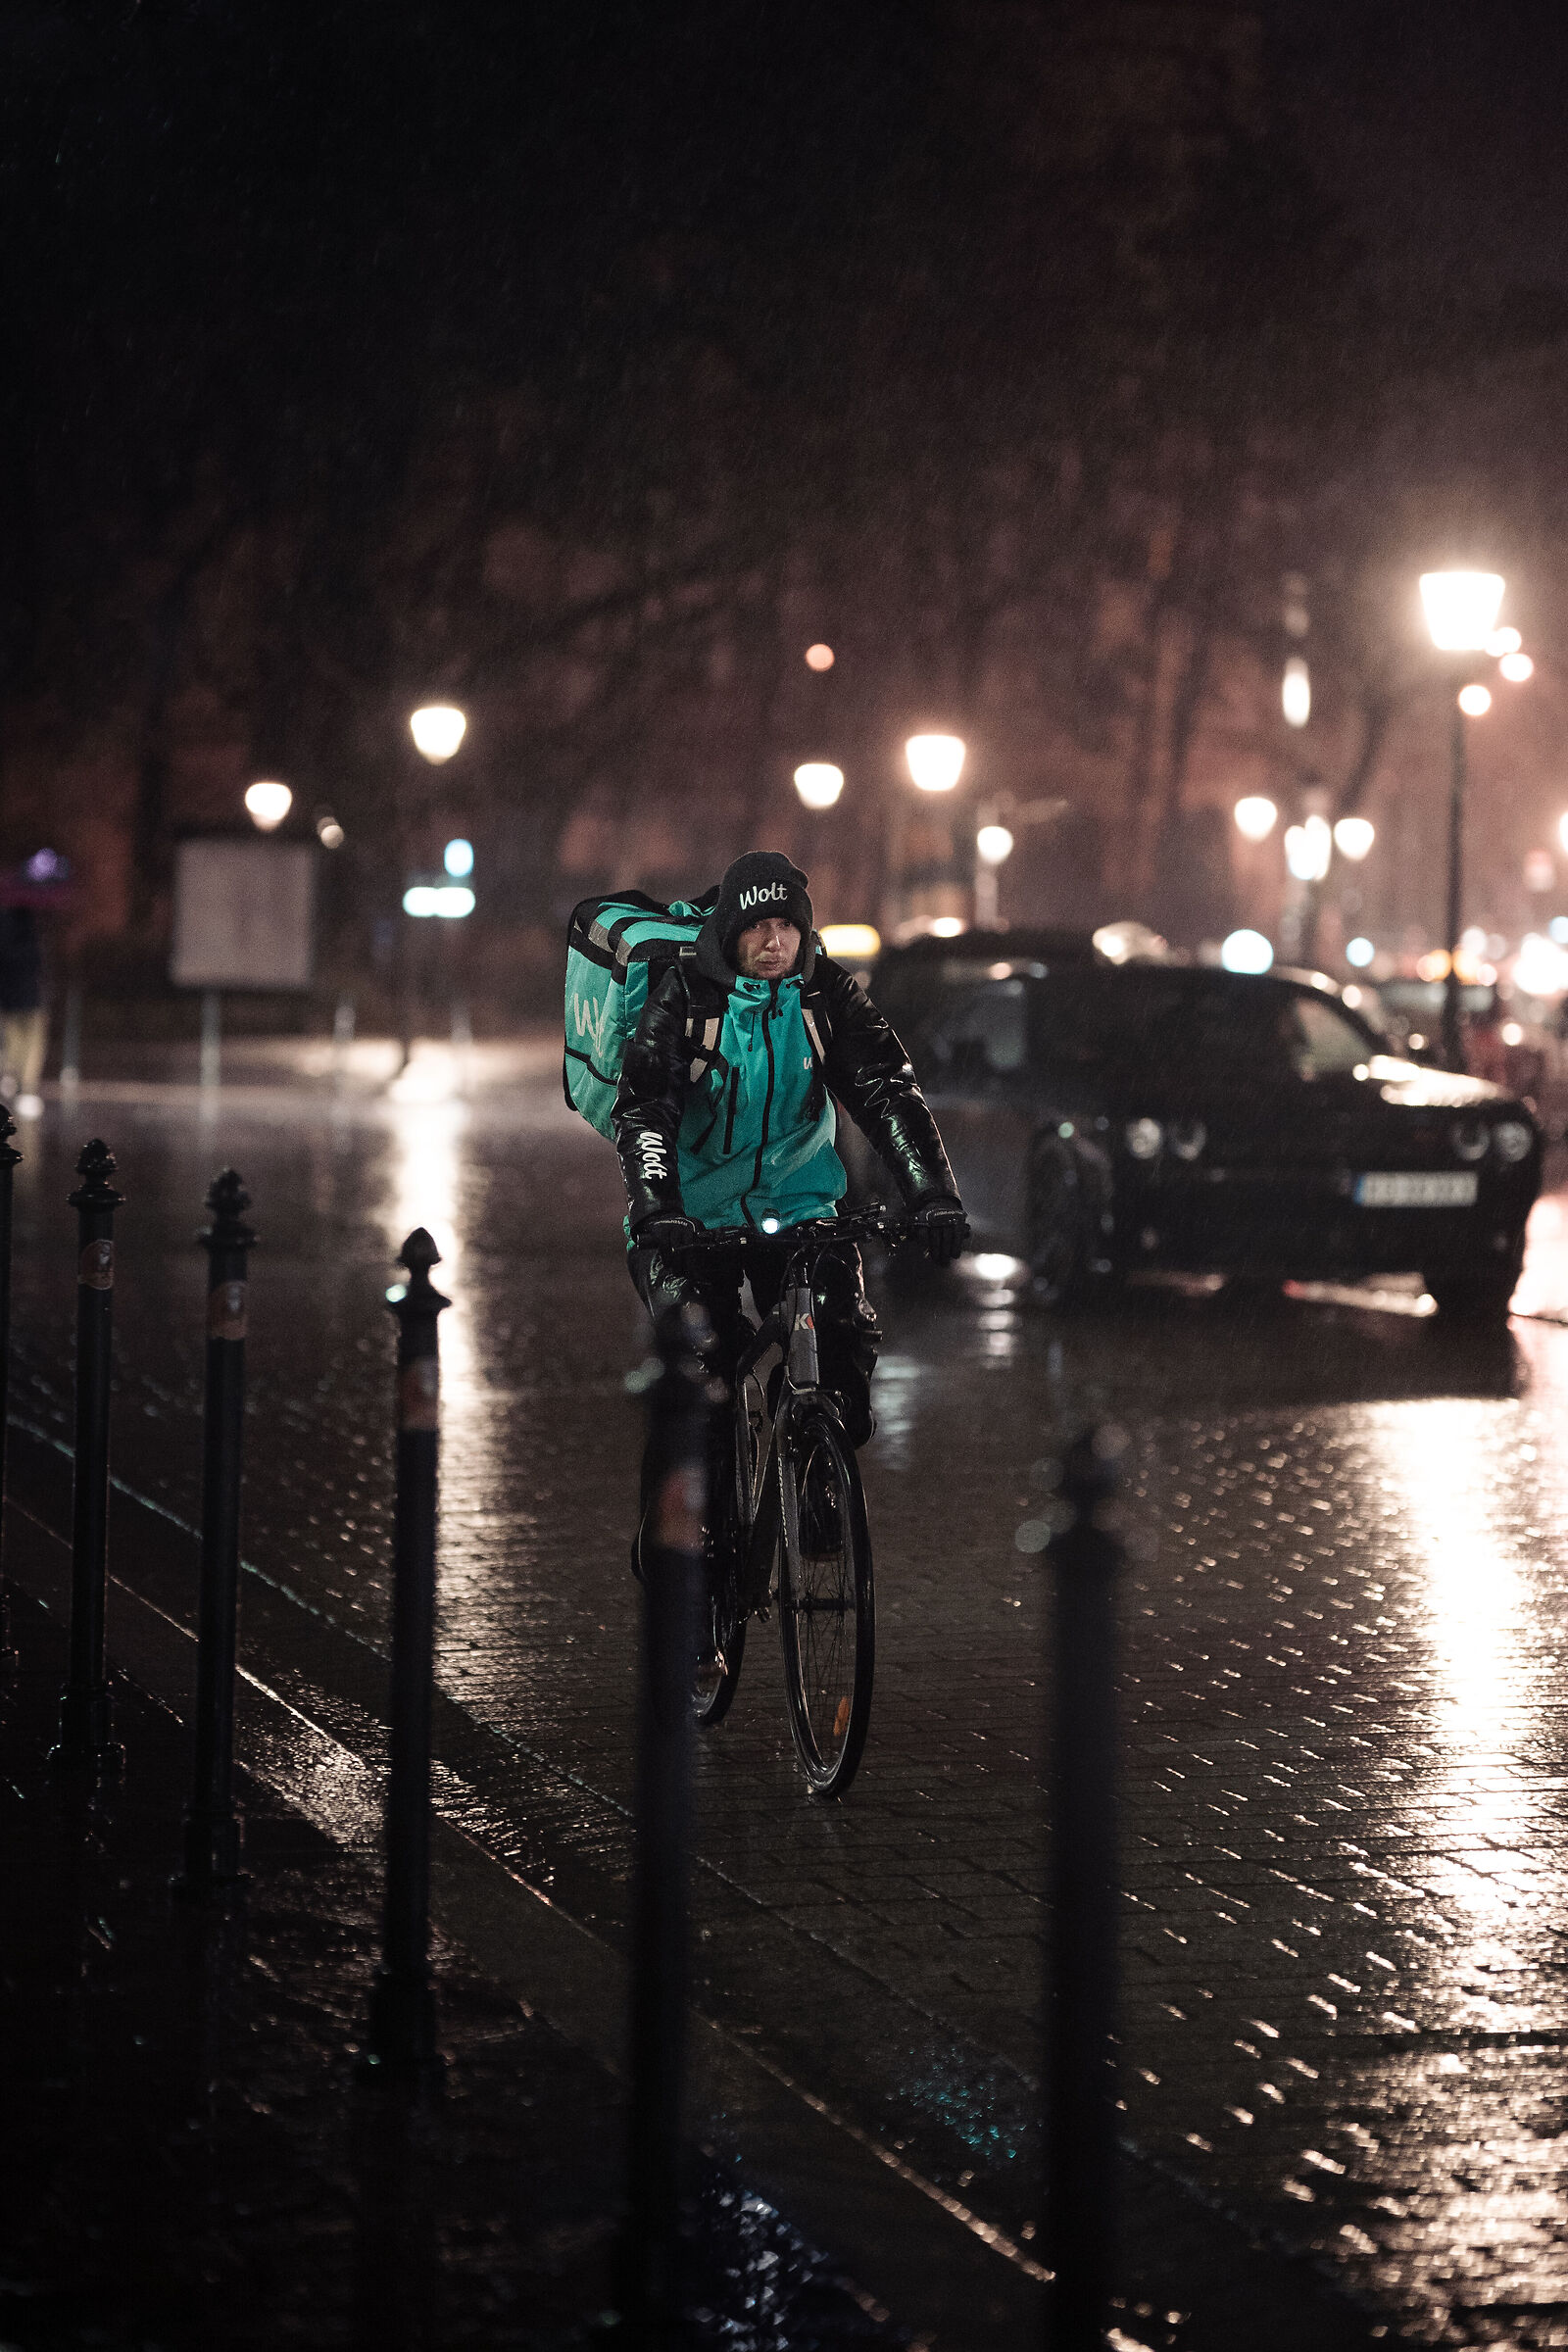 A rider in the night rain...